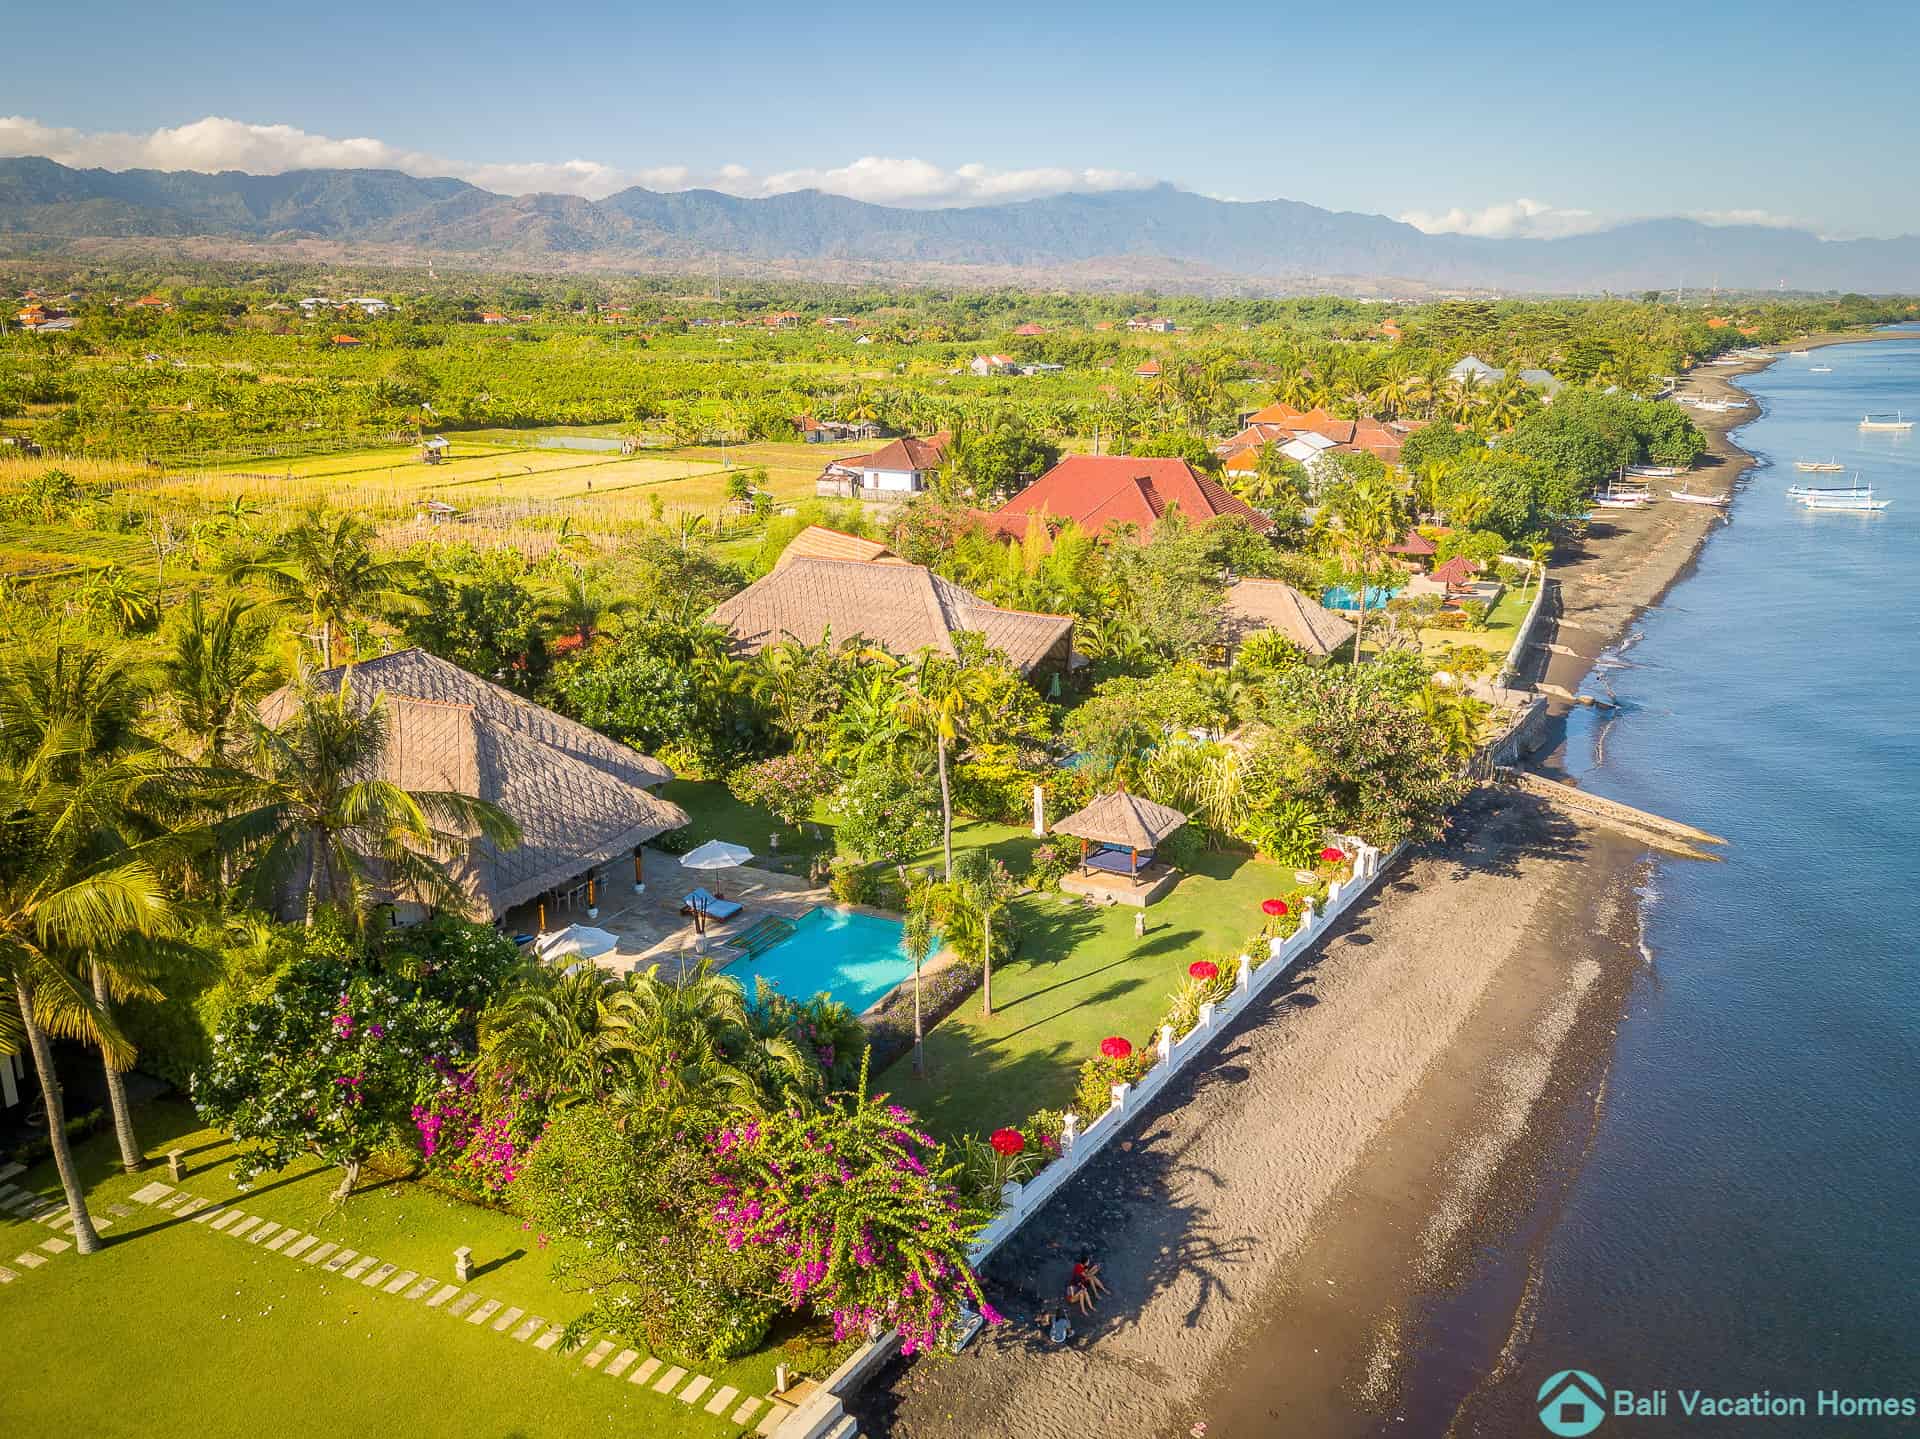 Villa Agus Mas - Bali Vacation Homes